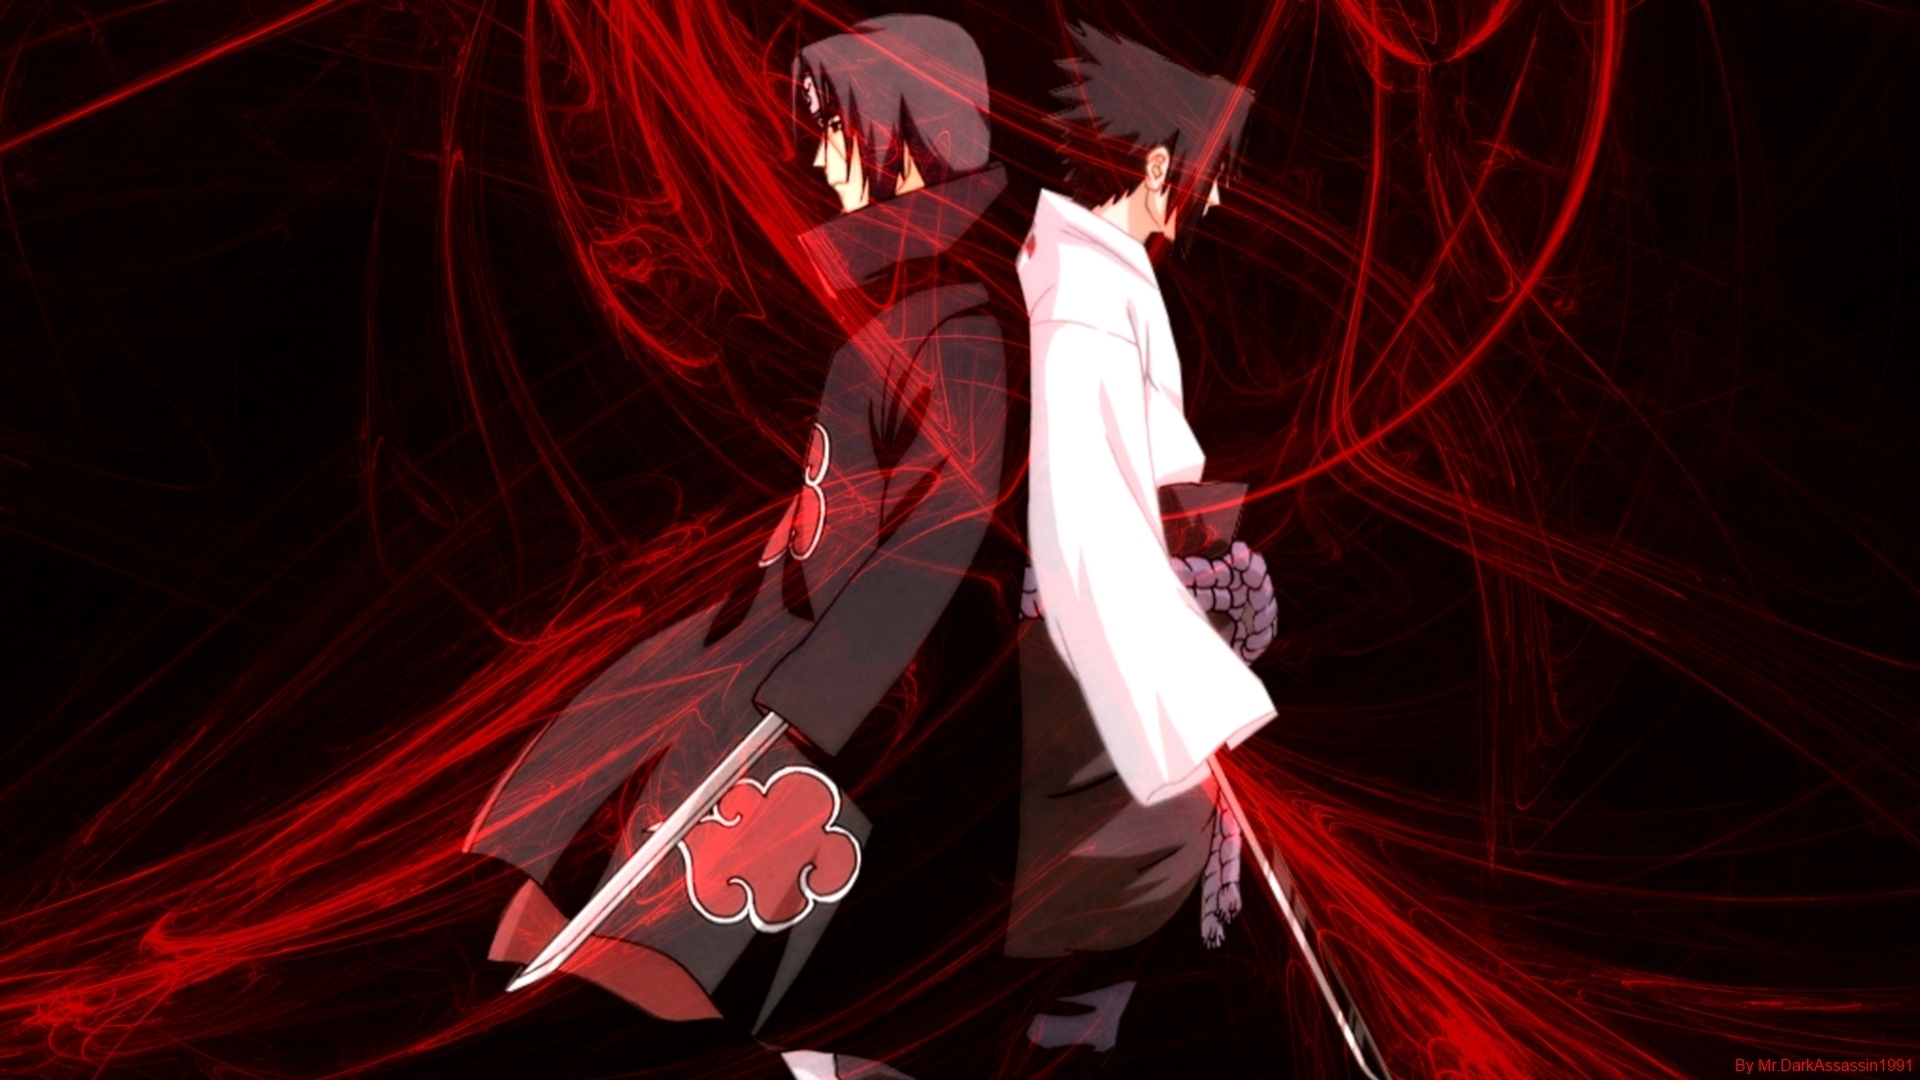 Sasuke và Itachi là hai nhân vật rất quan trọng trong Naruto, và hình nền Sasuke and Itachi sẽ đưa bạn đến với câu chuyện cảm động về tình anh em họ. Hãy tận hưởng hình ảnh của Sasuke và Itachi đang cùng đối đầu với nhau, với sự bảo vệ và động viên từ anh trai Itachi của Sasuke.